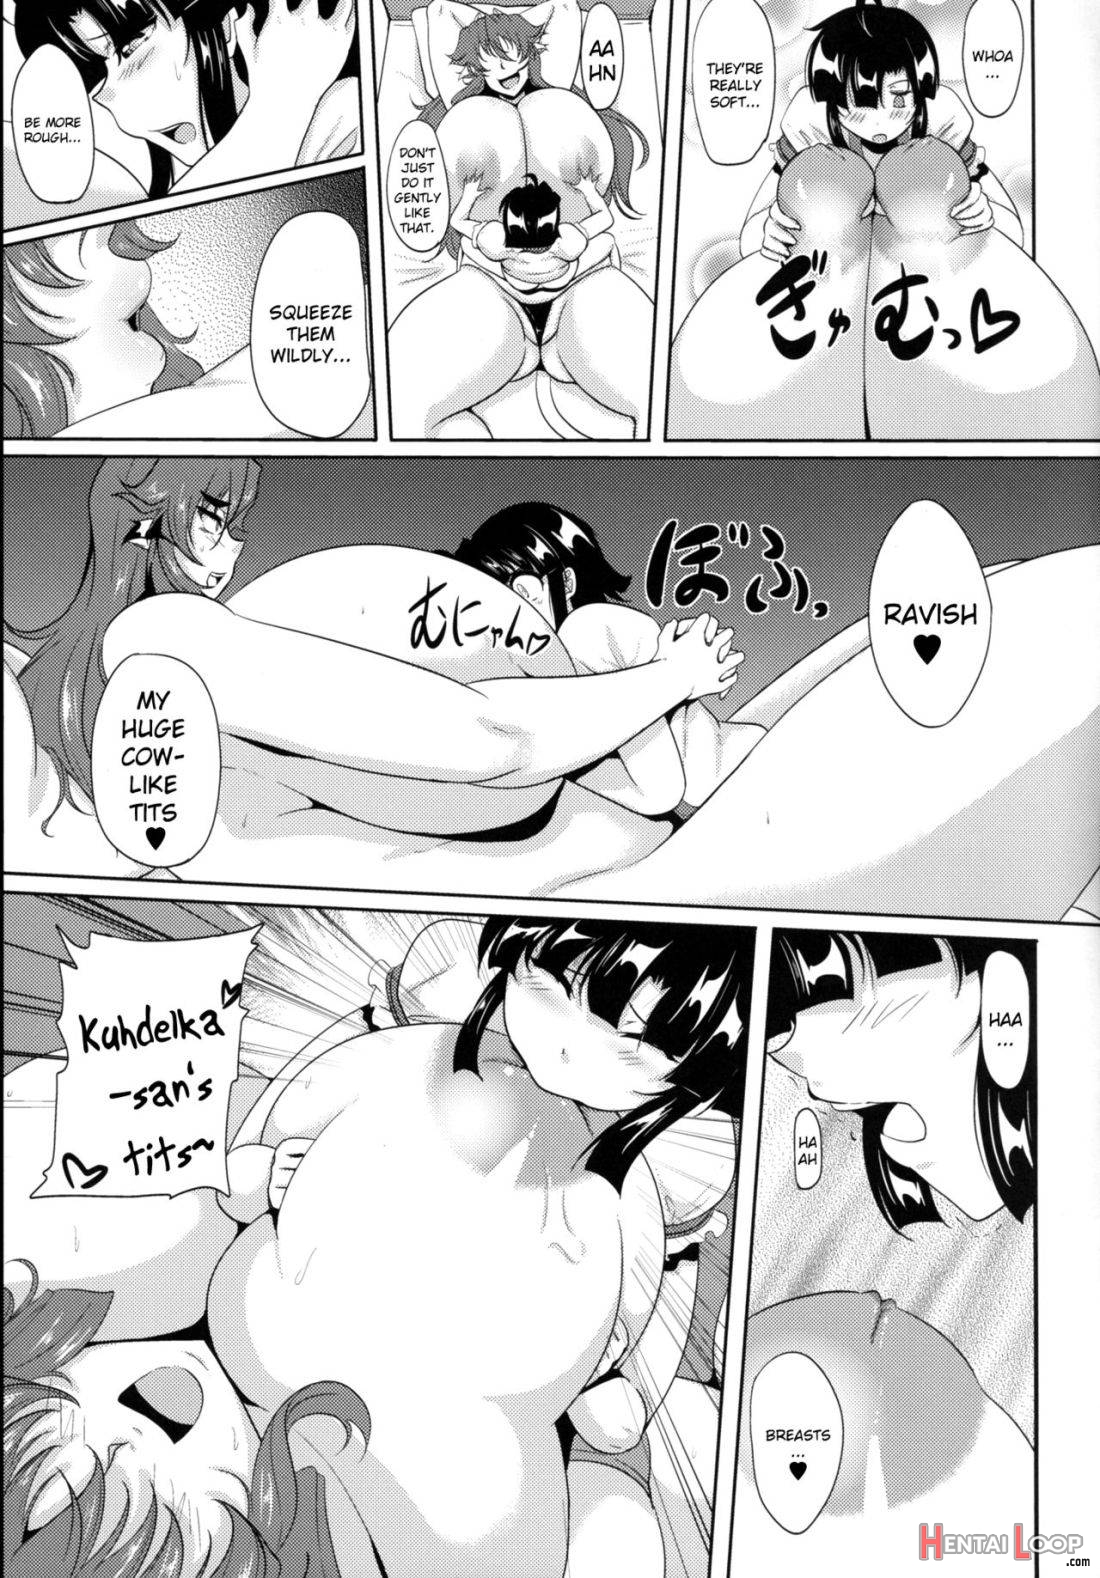 Gyu-don! 3 -the Secret Menu page 8